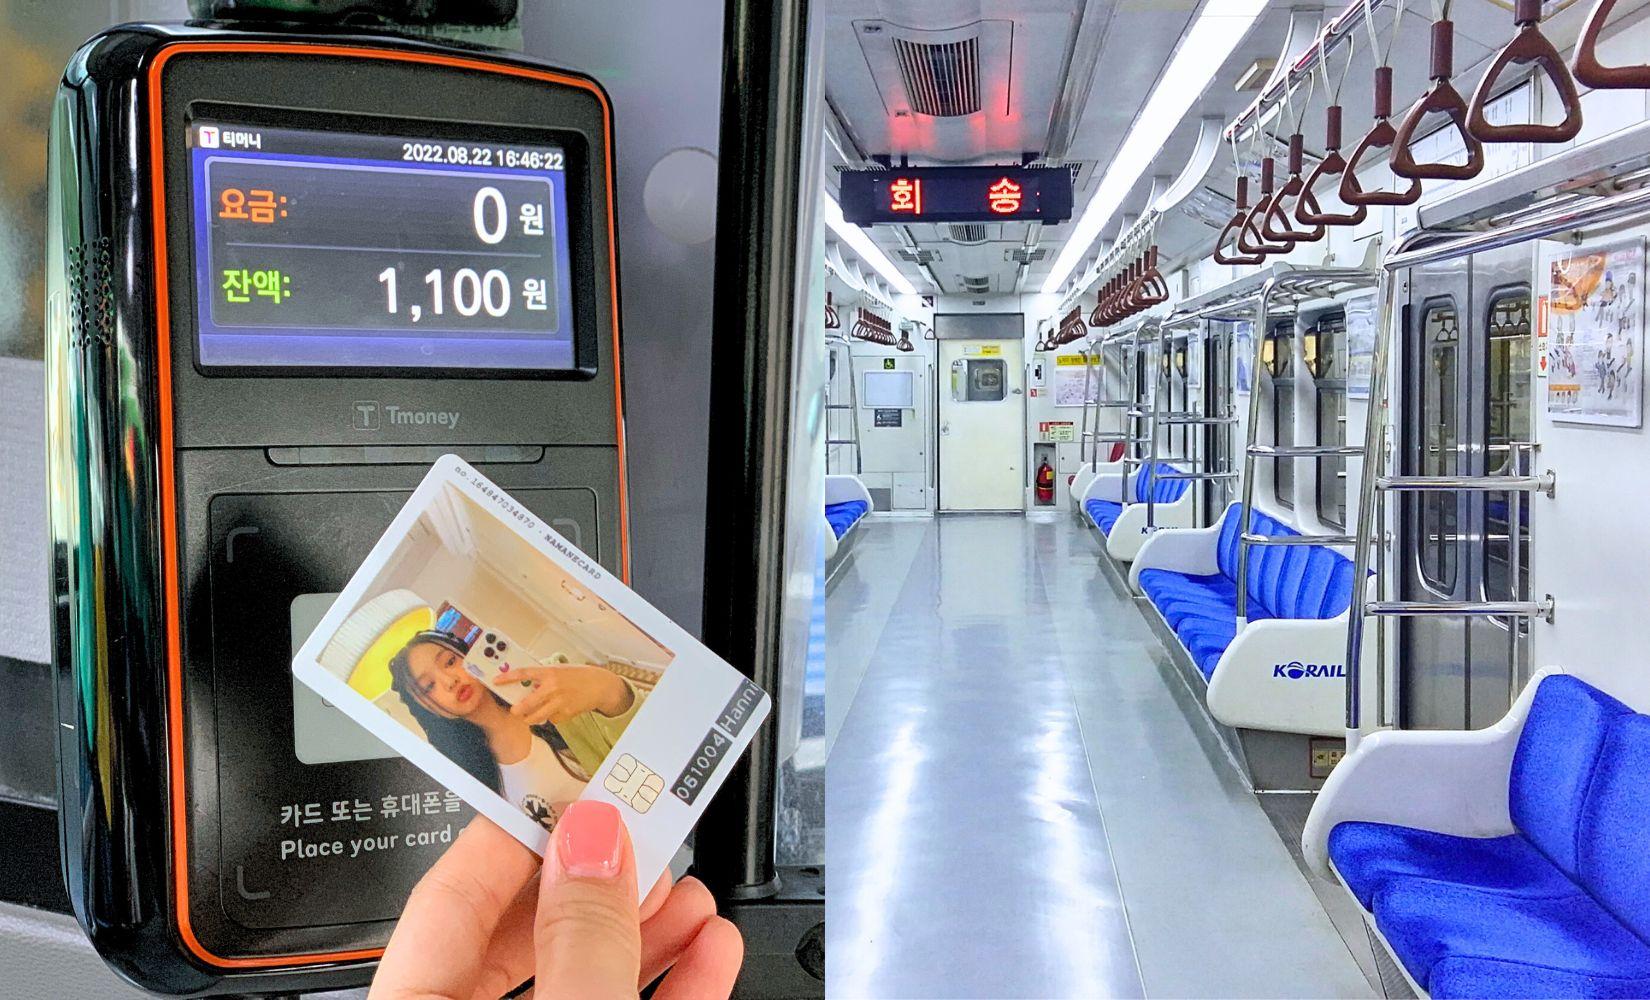 Hướng dẫn sử dụng thẻ giao thông ở Hàn cho khách du lịch 2023